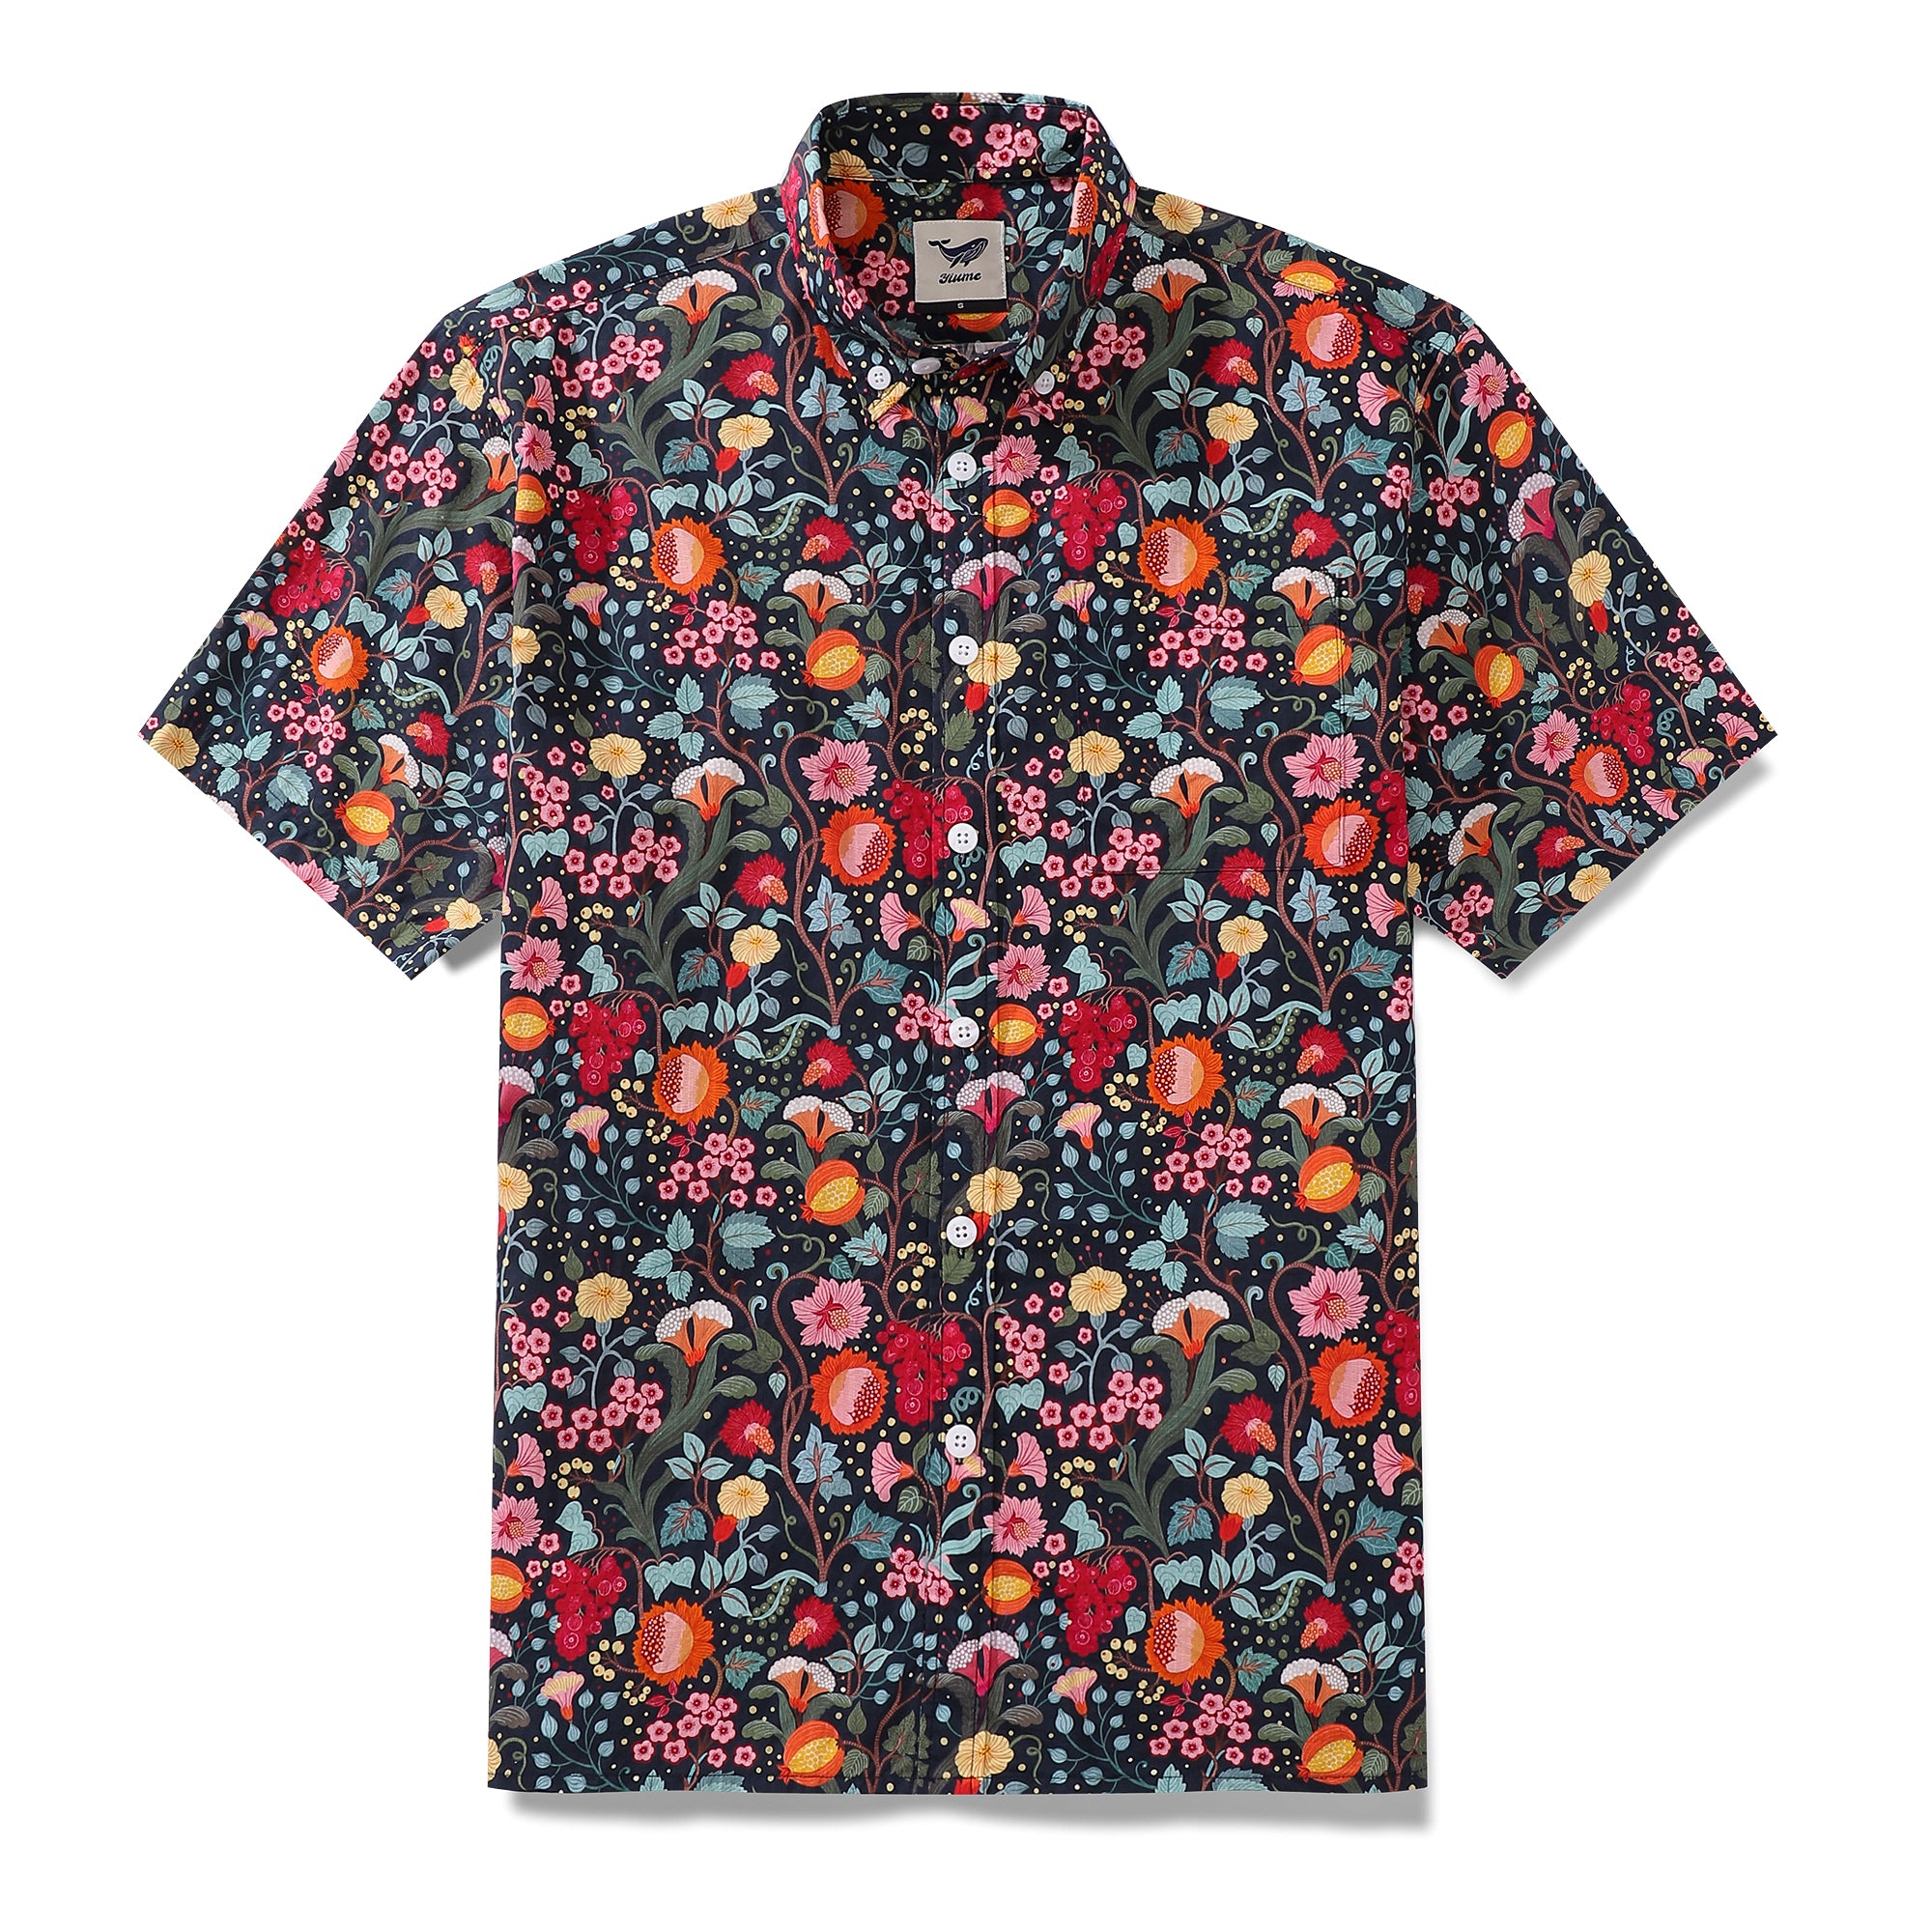 Men's Hawaiian Shirt 1960s Vintage Flower Garden Print Cotton Button-down Short Sleeve Aloha Shirt